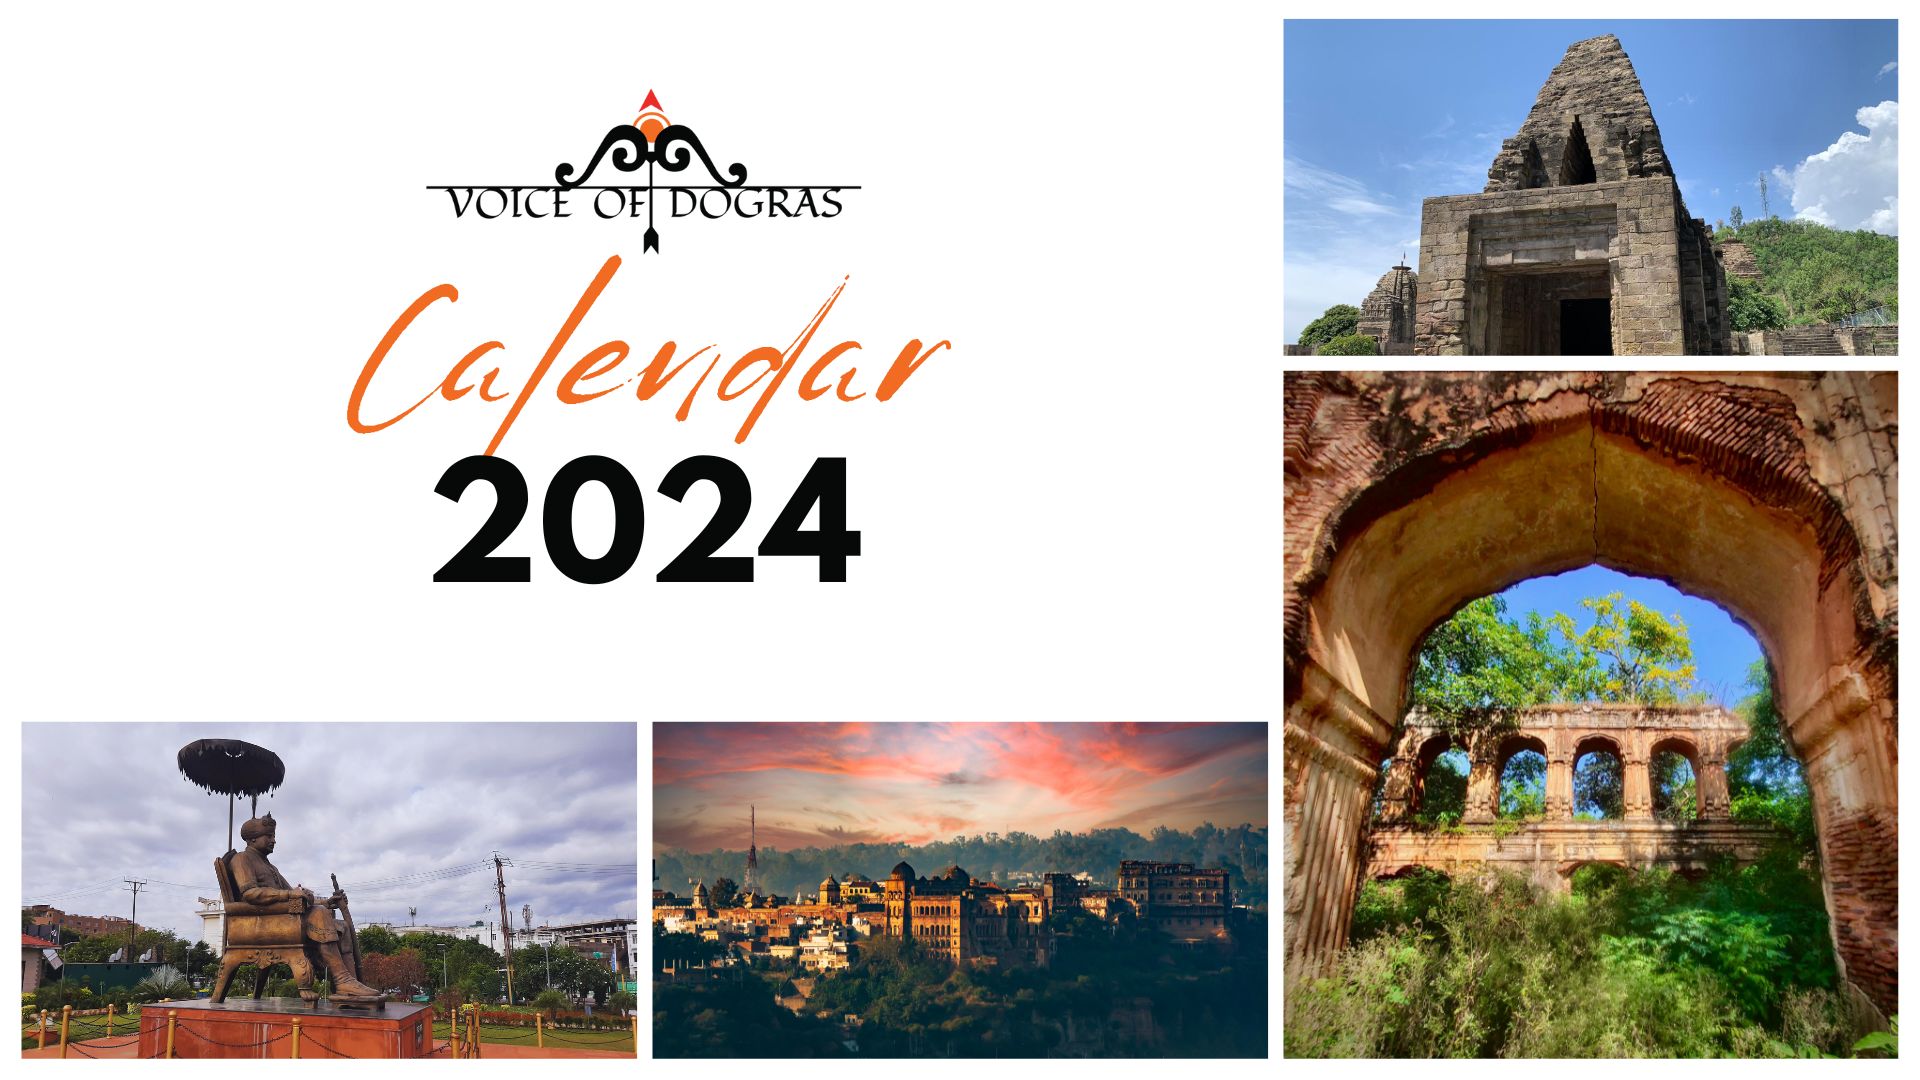 The Voice of Dogras Calendar 2024